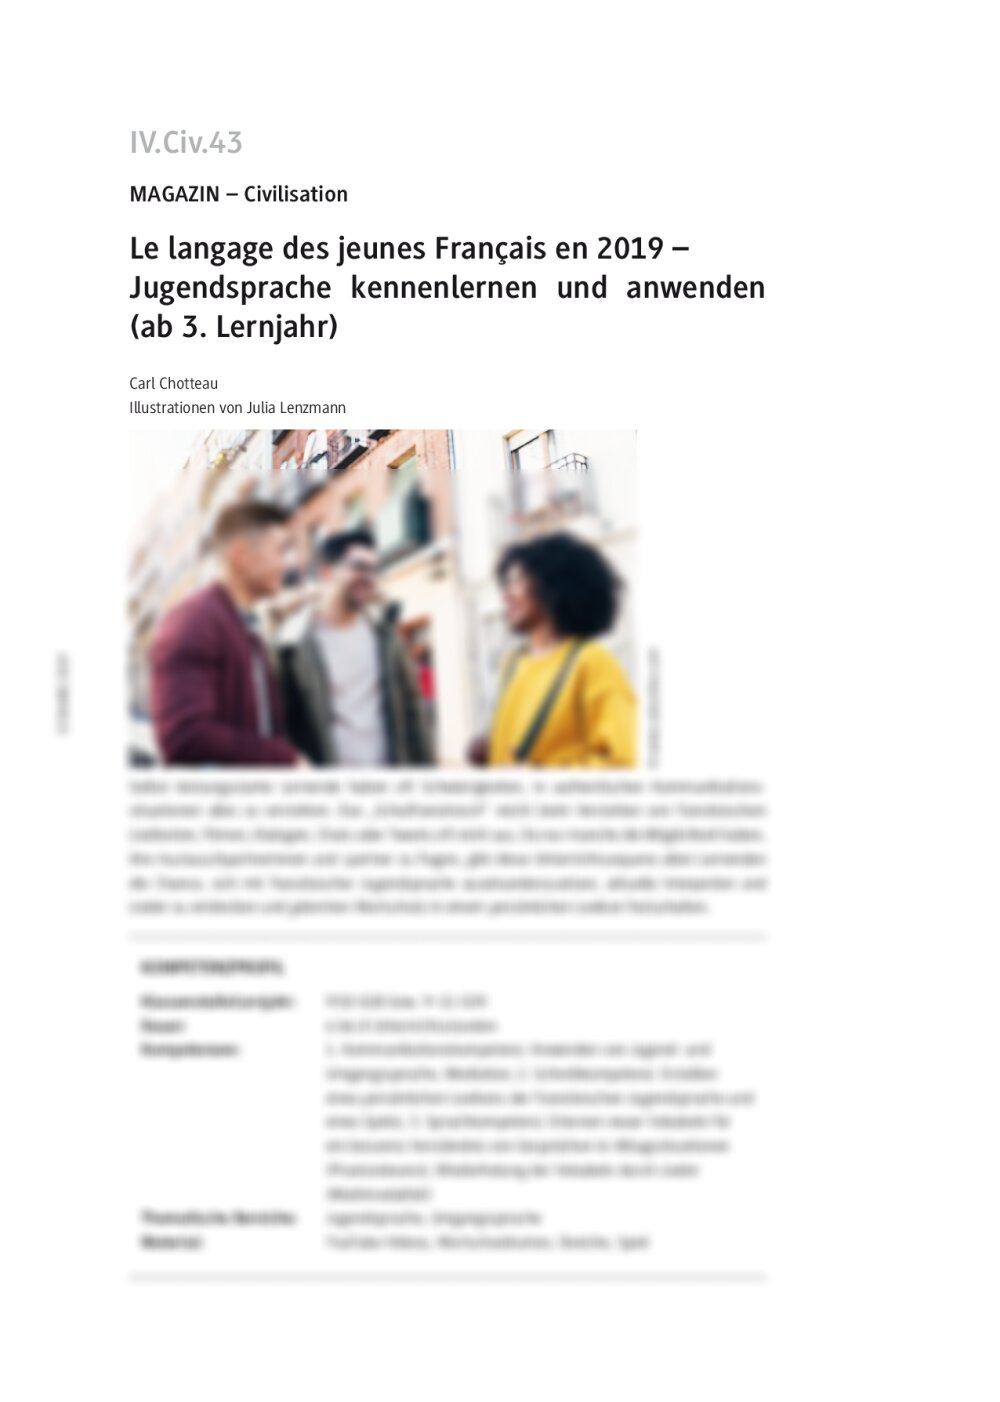 Französische Jugendsprache kennenlernen und anwenden - Seite 1